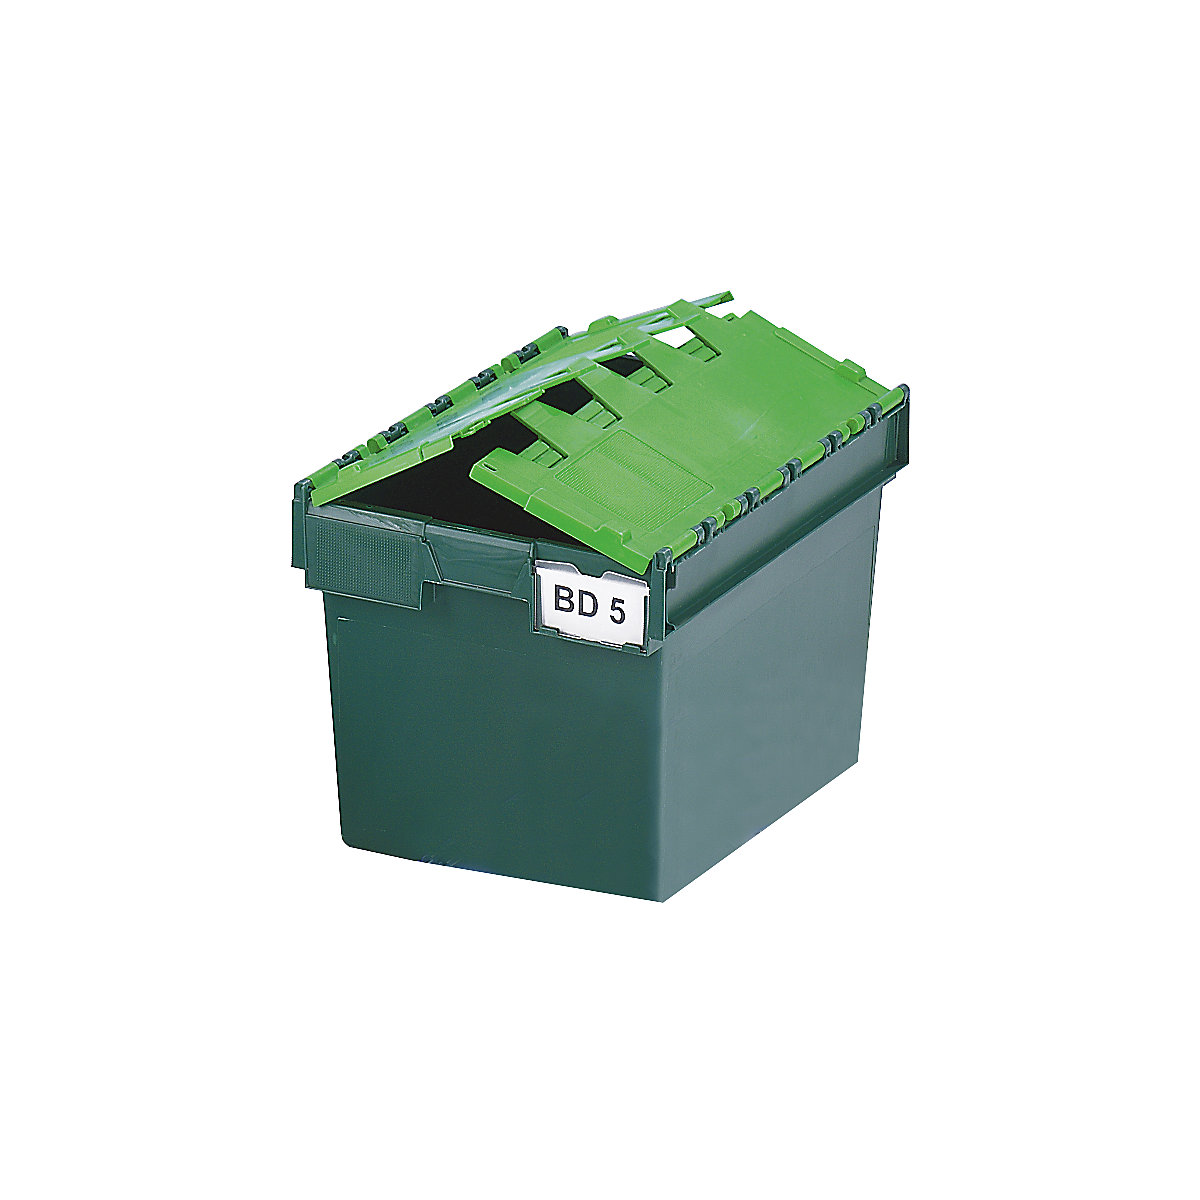 Recipiente empilhável e retornável com tampa articulada, volume 64 litros, CxLxA 600 x 400 x 365 mm, verde